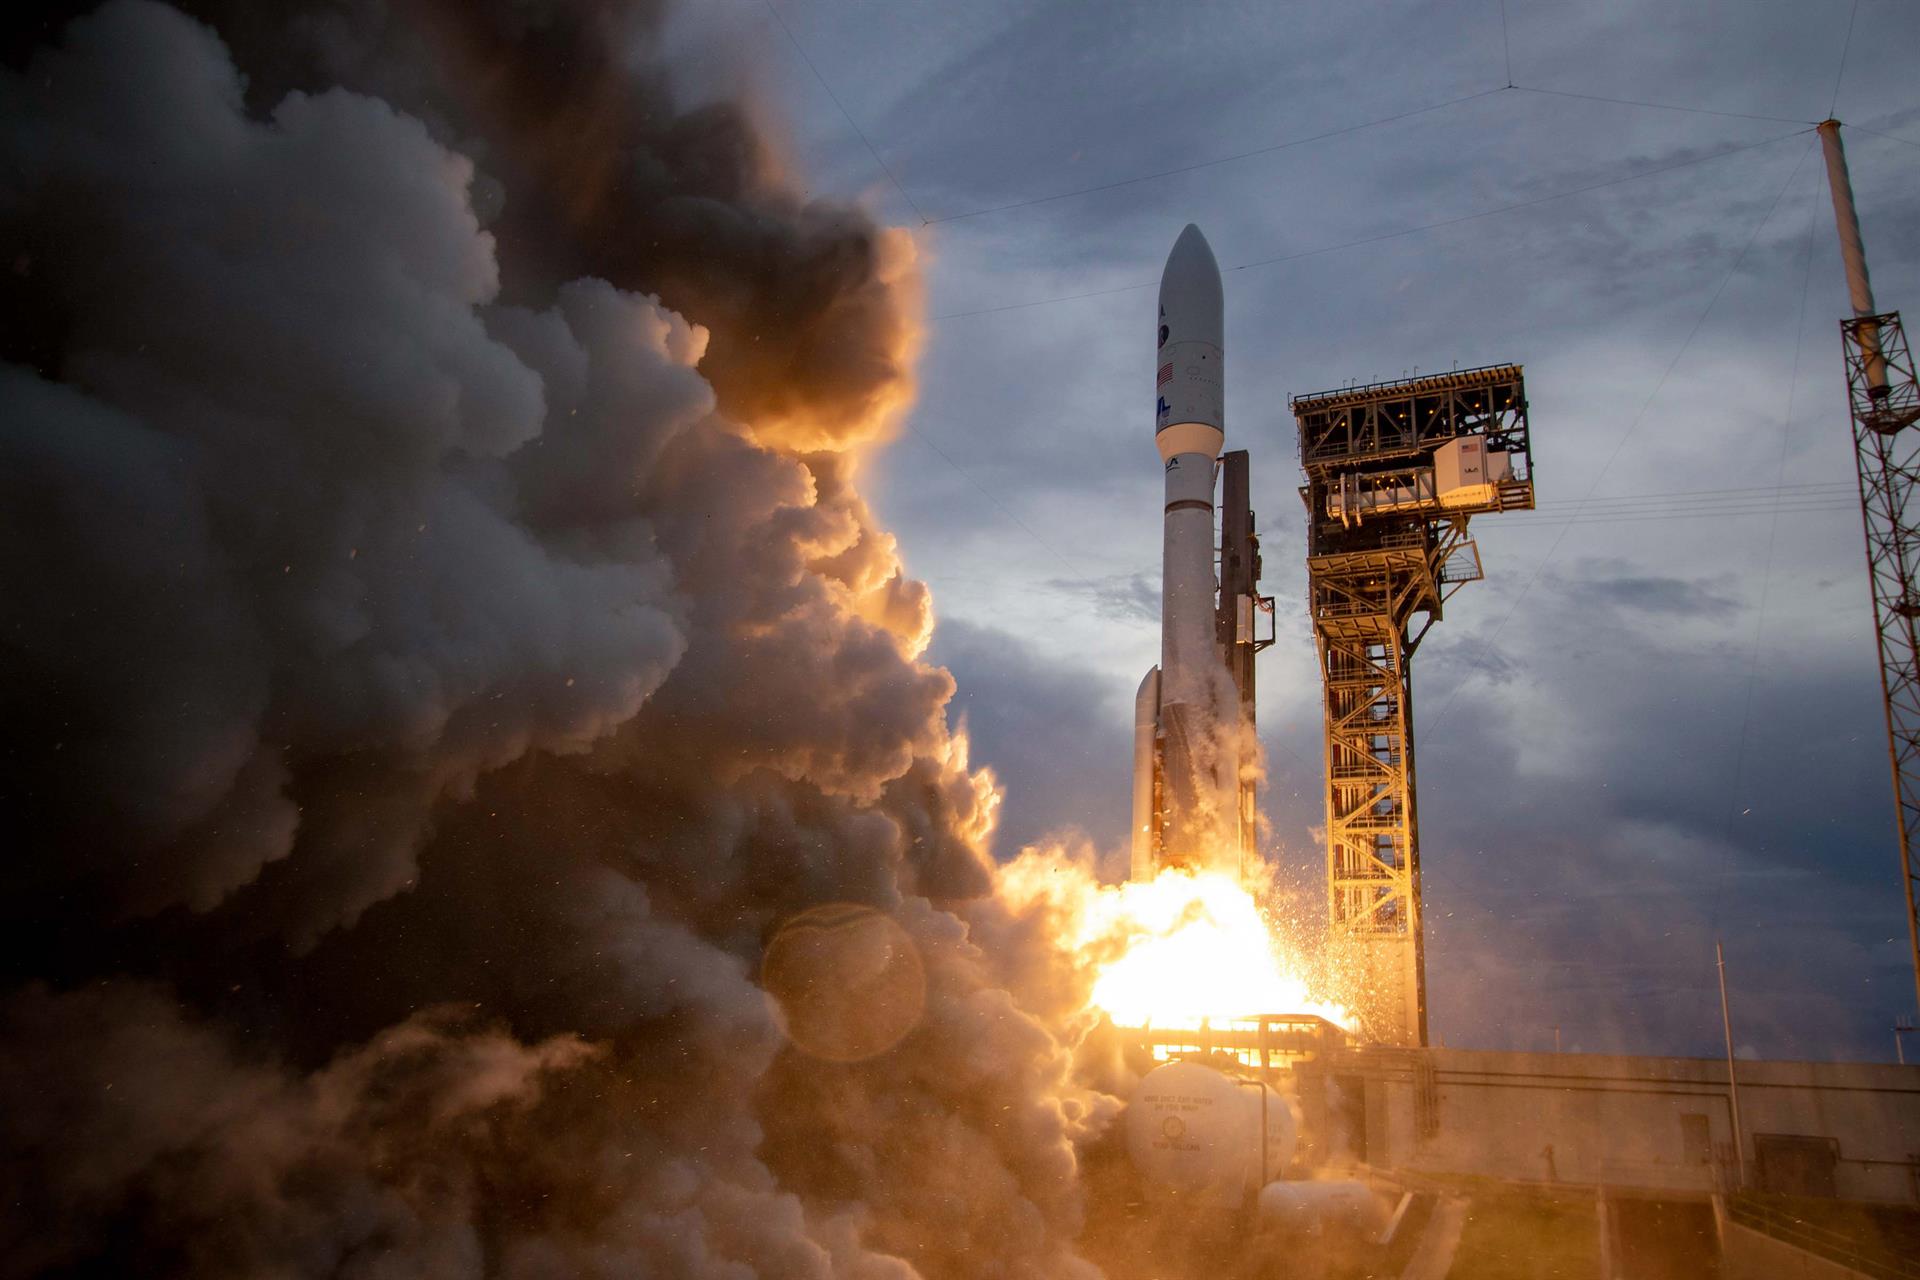 Fotografía cedida por la empresa aeroespacial United Launch Alliance (ULA) donde se aprecia el cohete Atlas V mientras despega hoy desde el Complejo de Lanzamiento 41 de la estación espacial de Cabo Cañaveral, Florida. EFE/Jeff Spotts/ULA /SOLO USO EDITORIAL /NO VENTAS /SOLO DISPONIBLE PARA ILUSTRAR LA NOTICIA QUE ACOMPAÑA /CRÉDITO OBLIGATORIO
